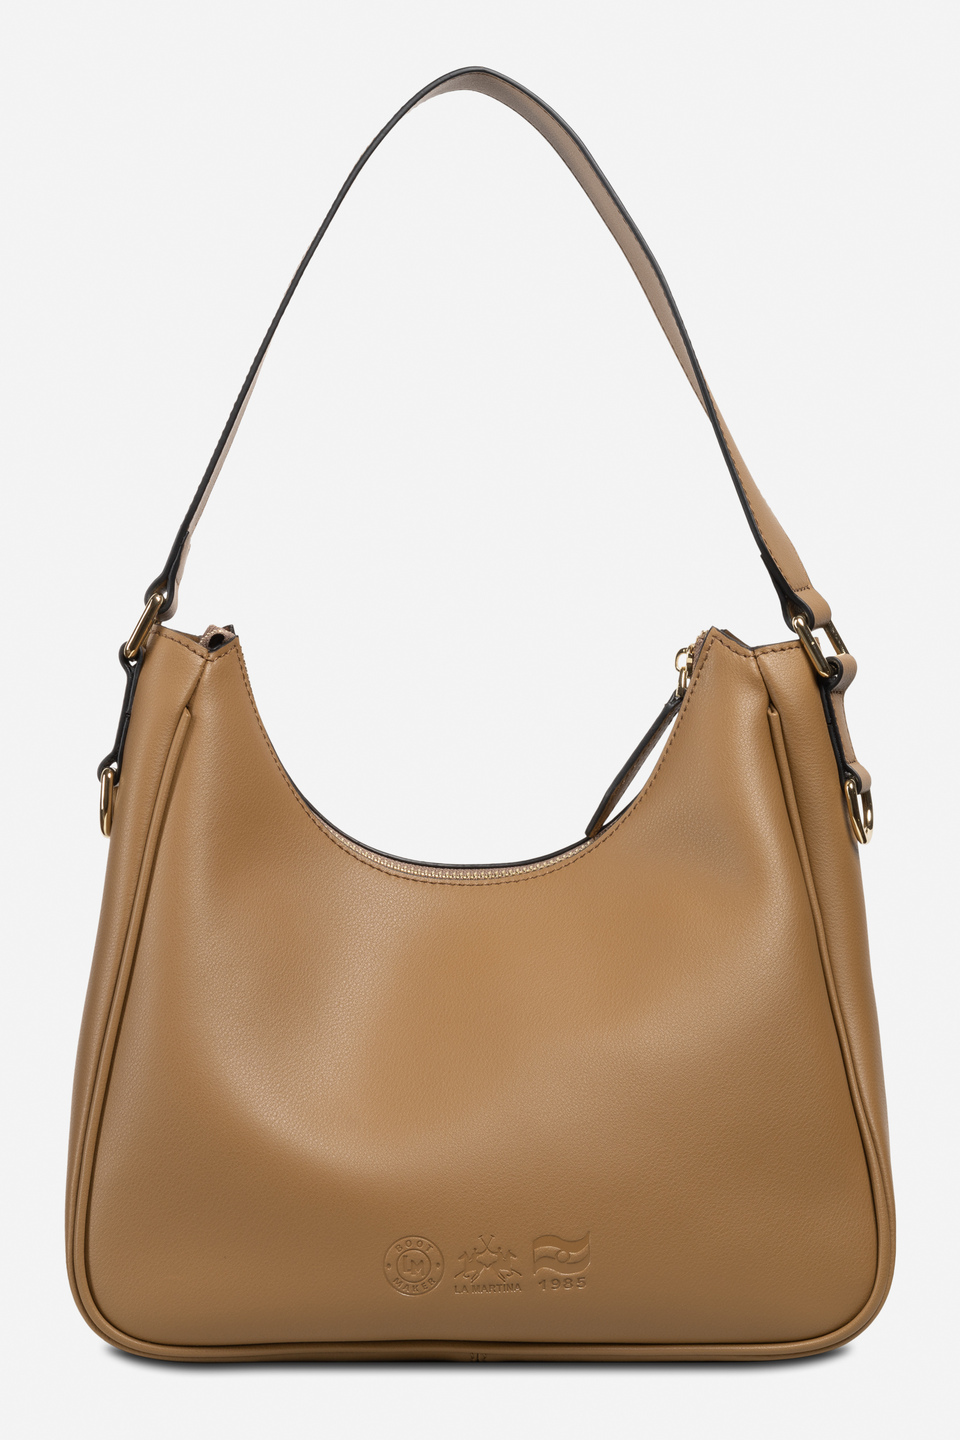 Women's leather bag | La Martina - Official Online Shop